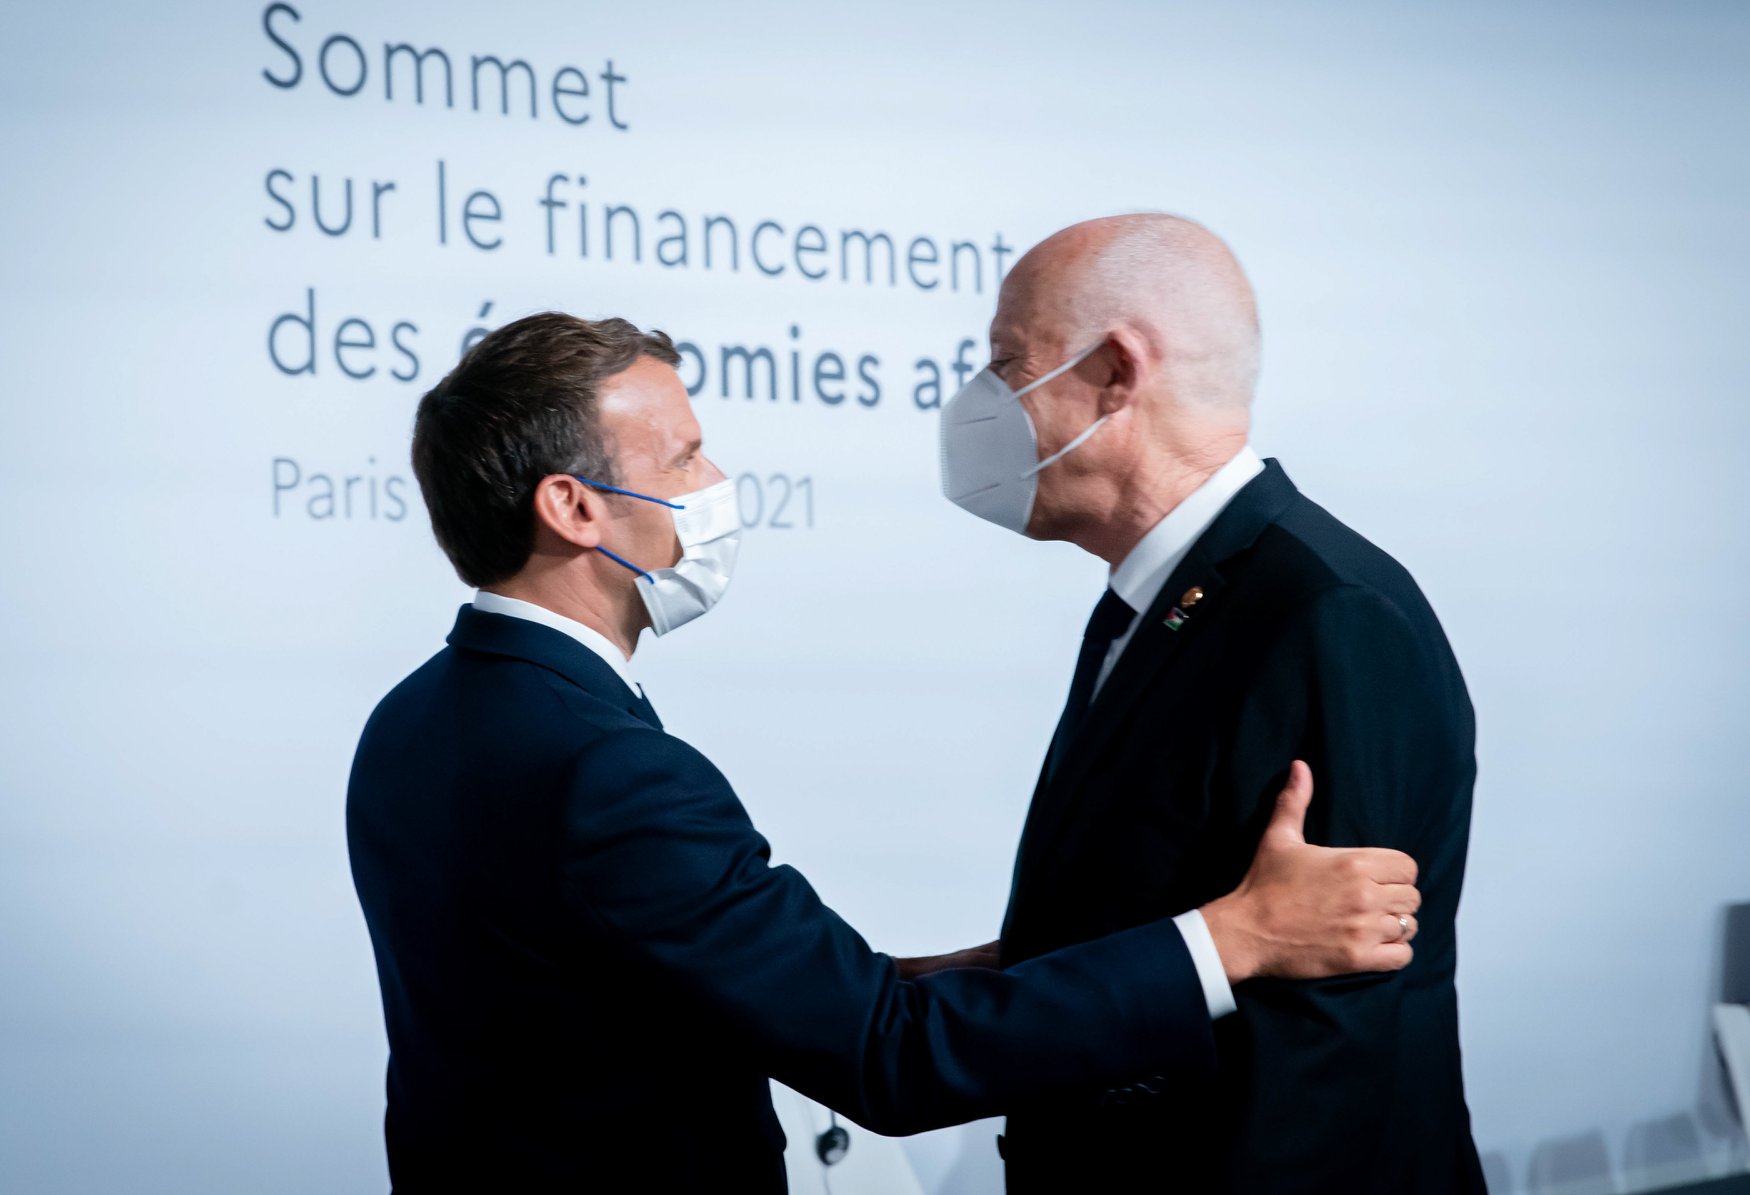 L’ambassadeur de Tunisie en France salue la qualité des échanges entre Saied et Macron